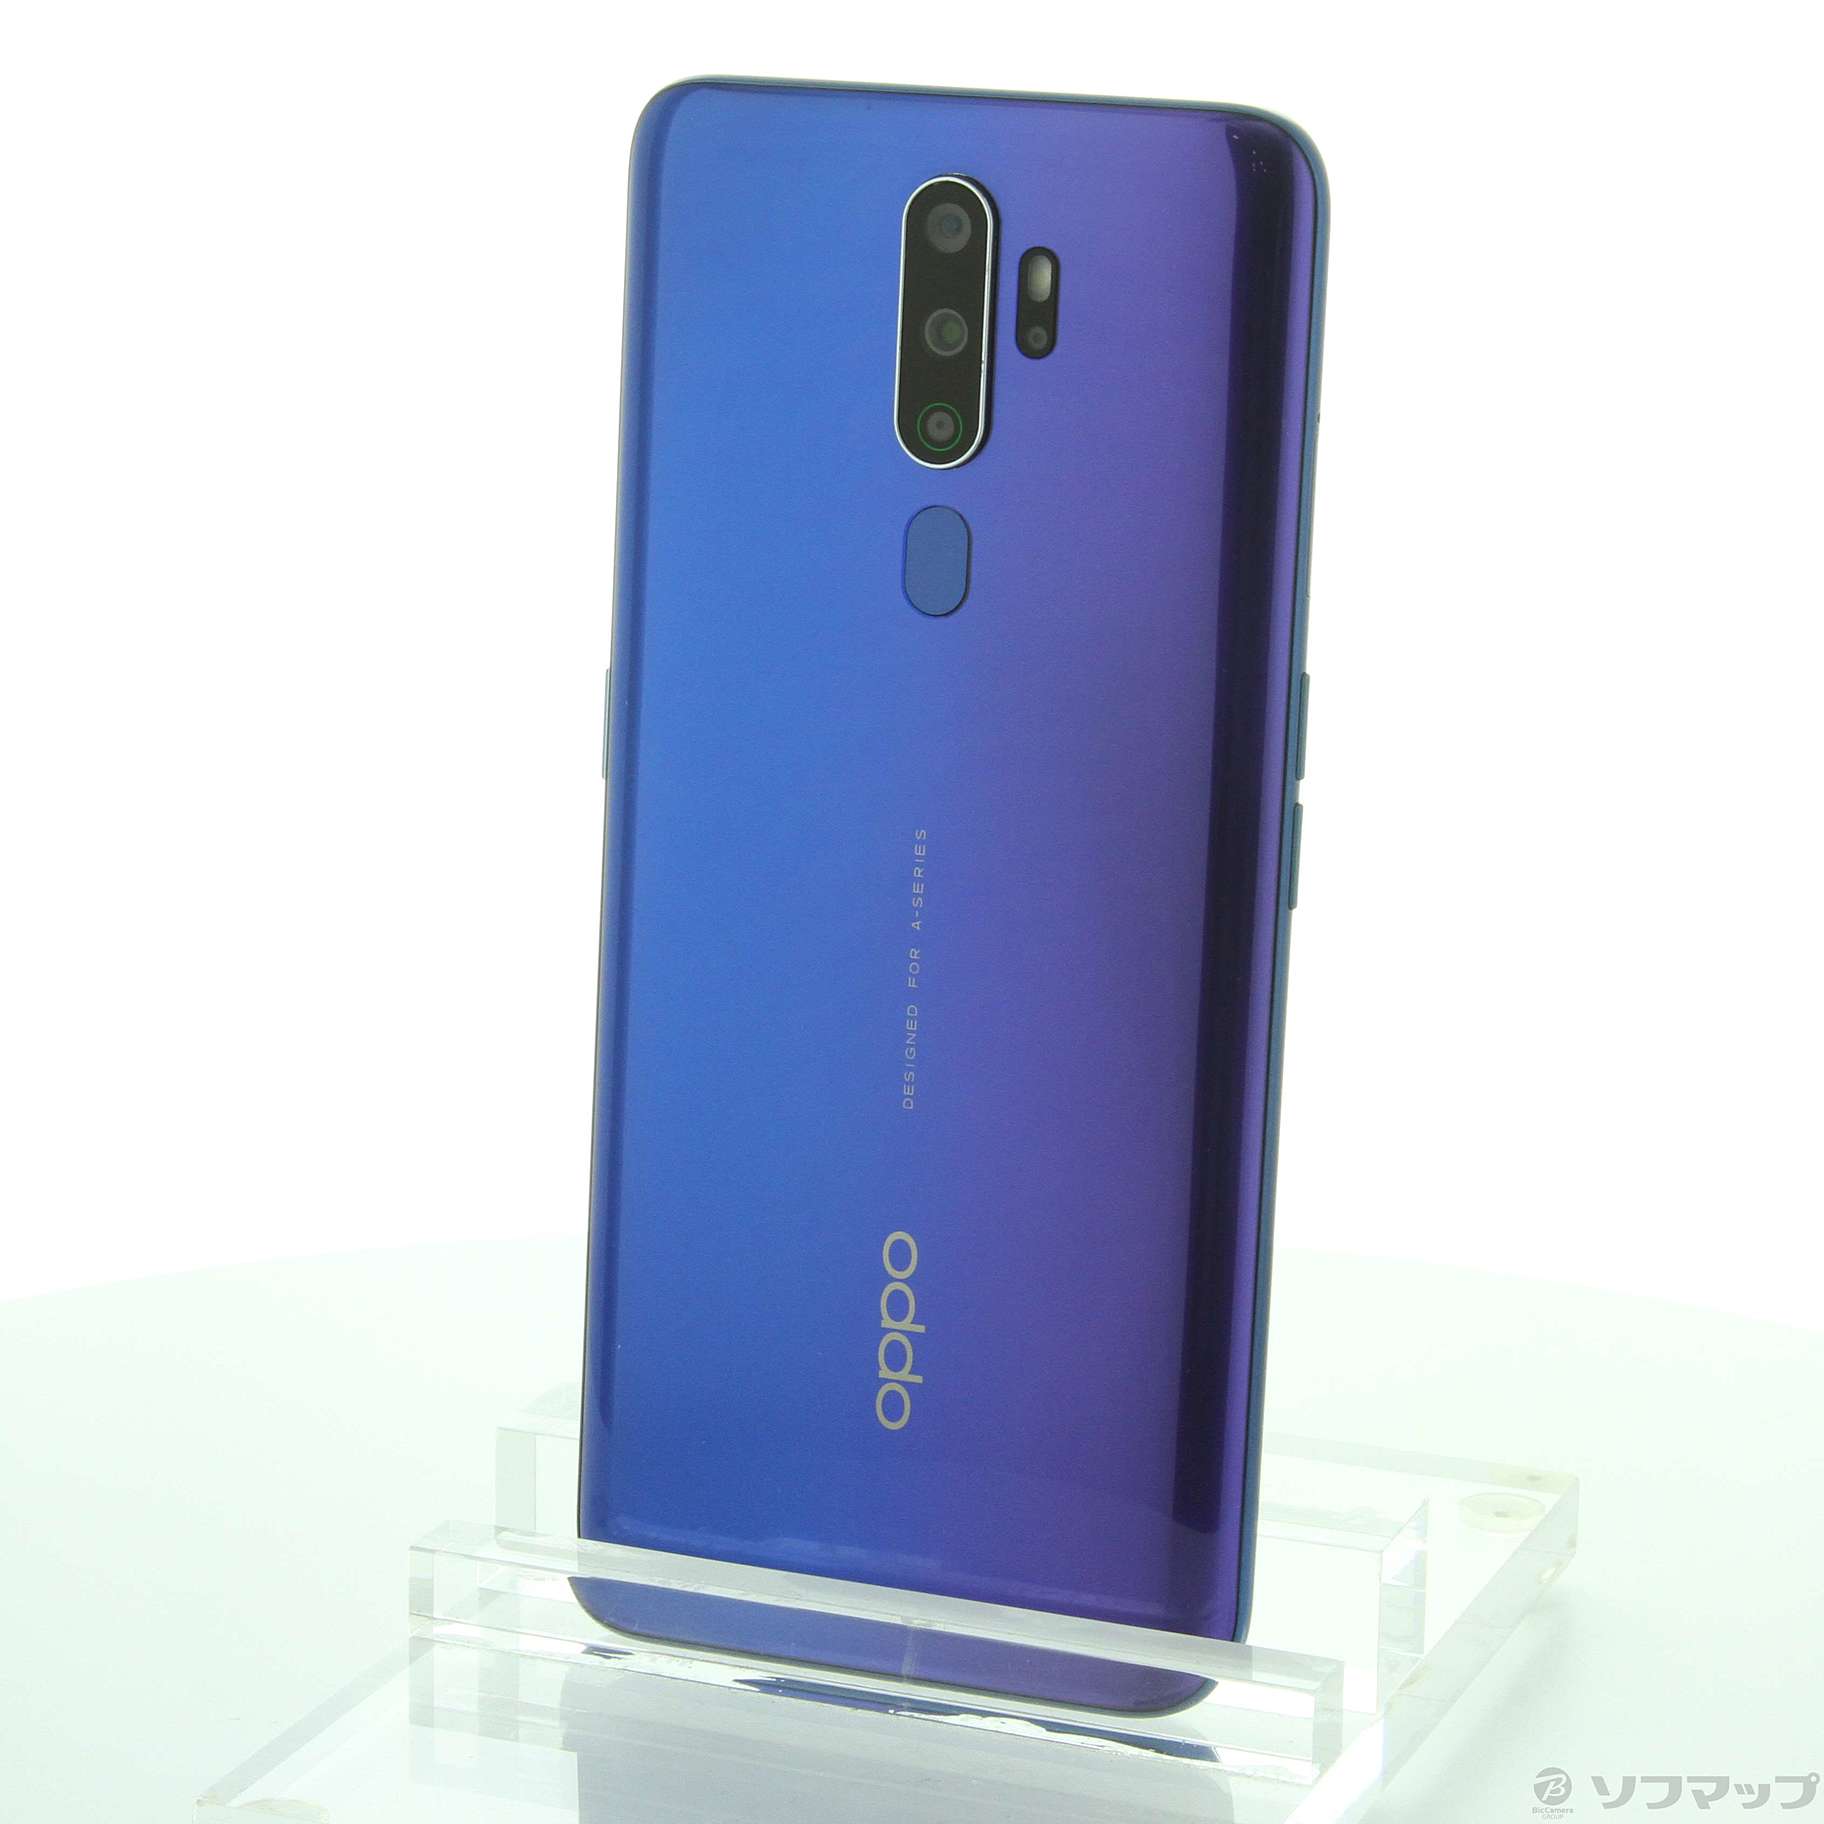 【美品】OPPO A5 2020 64GB ブルー CPH1943 SIM